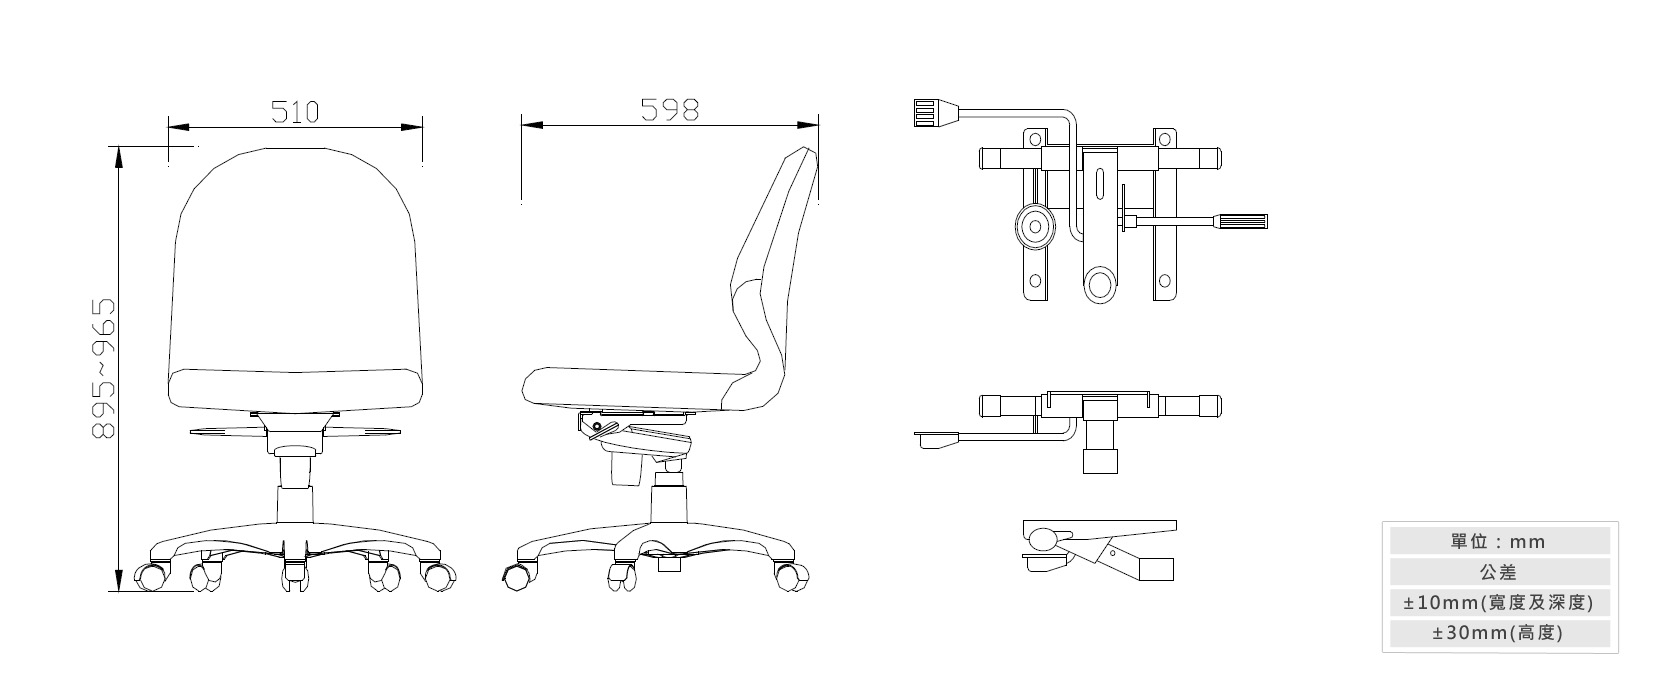 2-19新人體工學辦公椅(附調整腰靠)材質說明